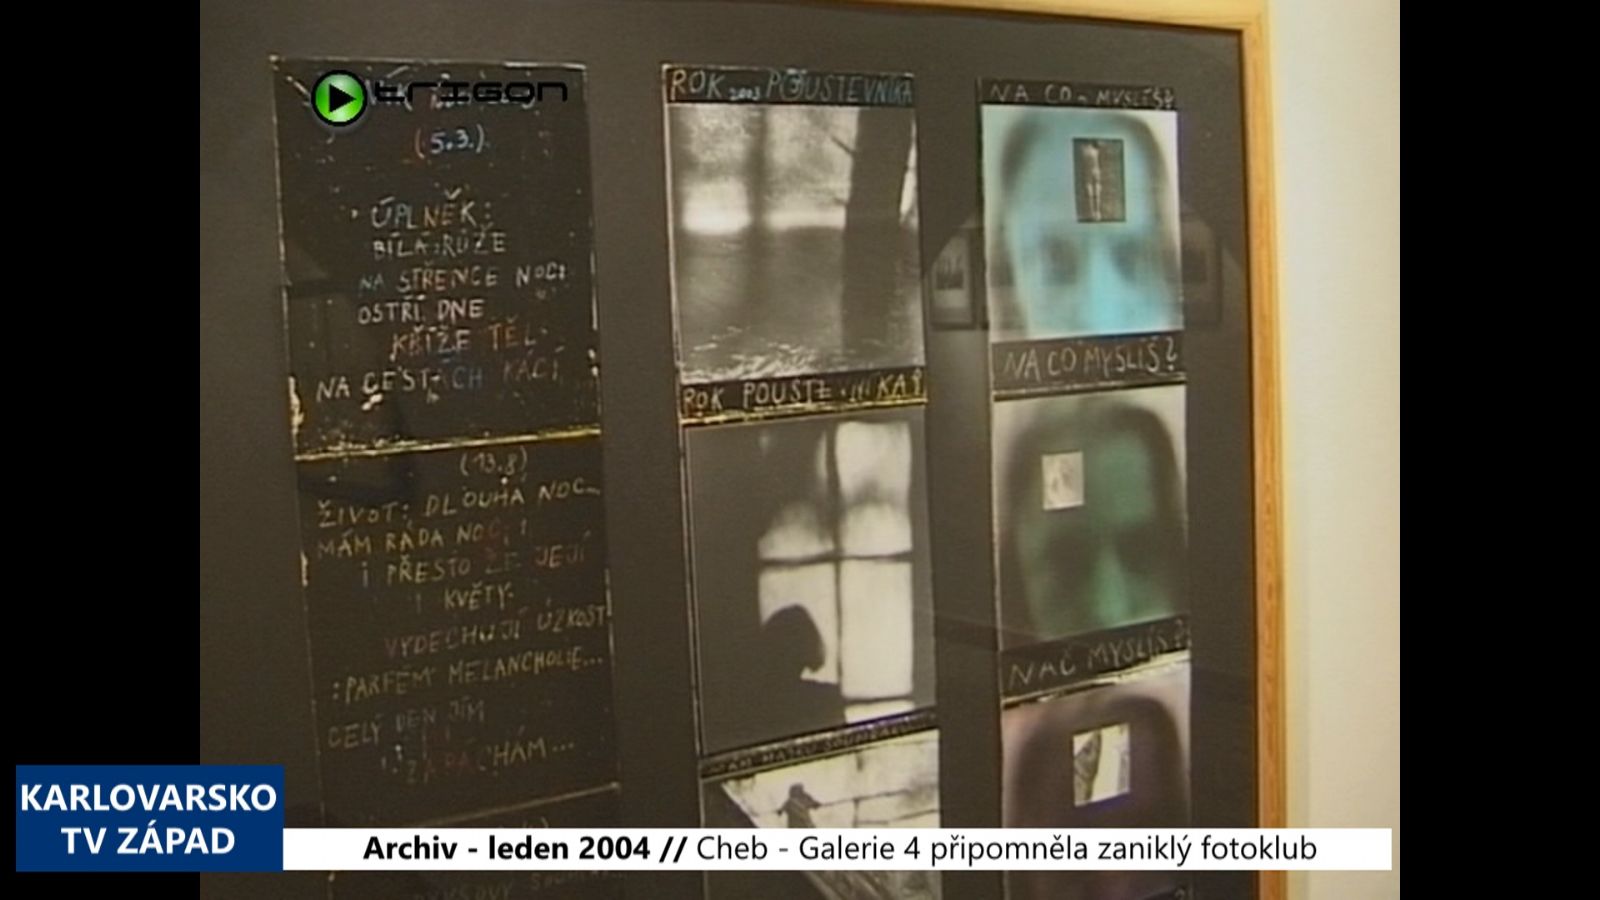 2004 – Cheb: Galerie 4 připomněla zaniklý fotoklub (TV Západ)